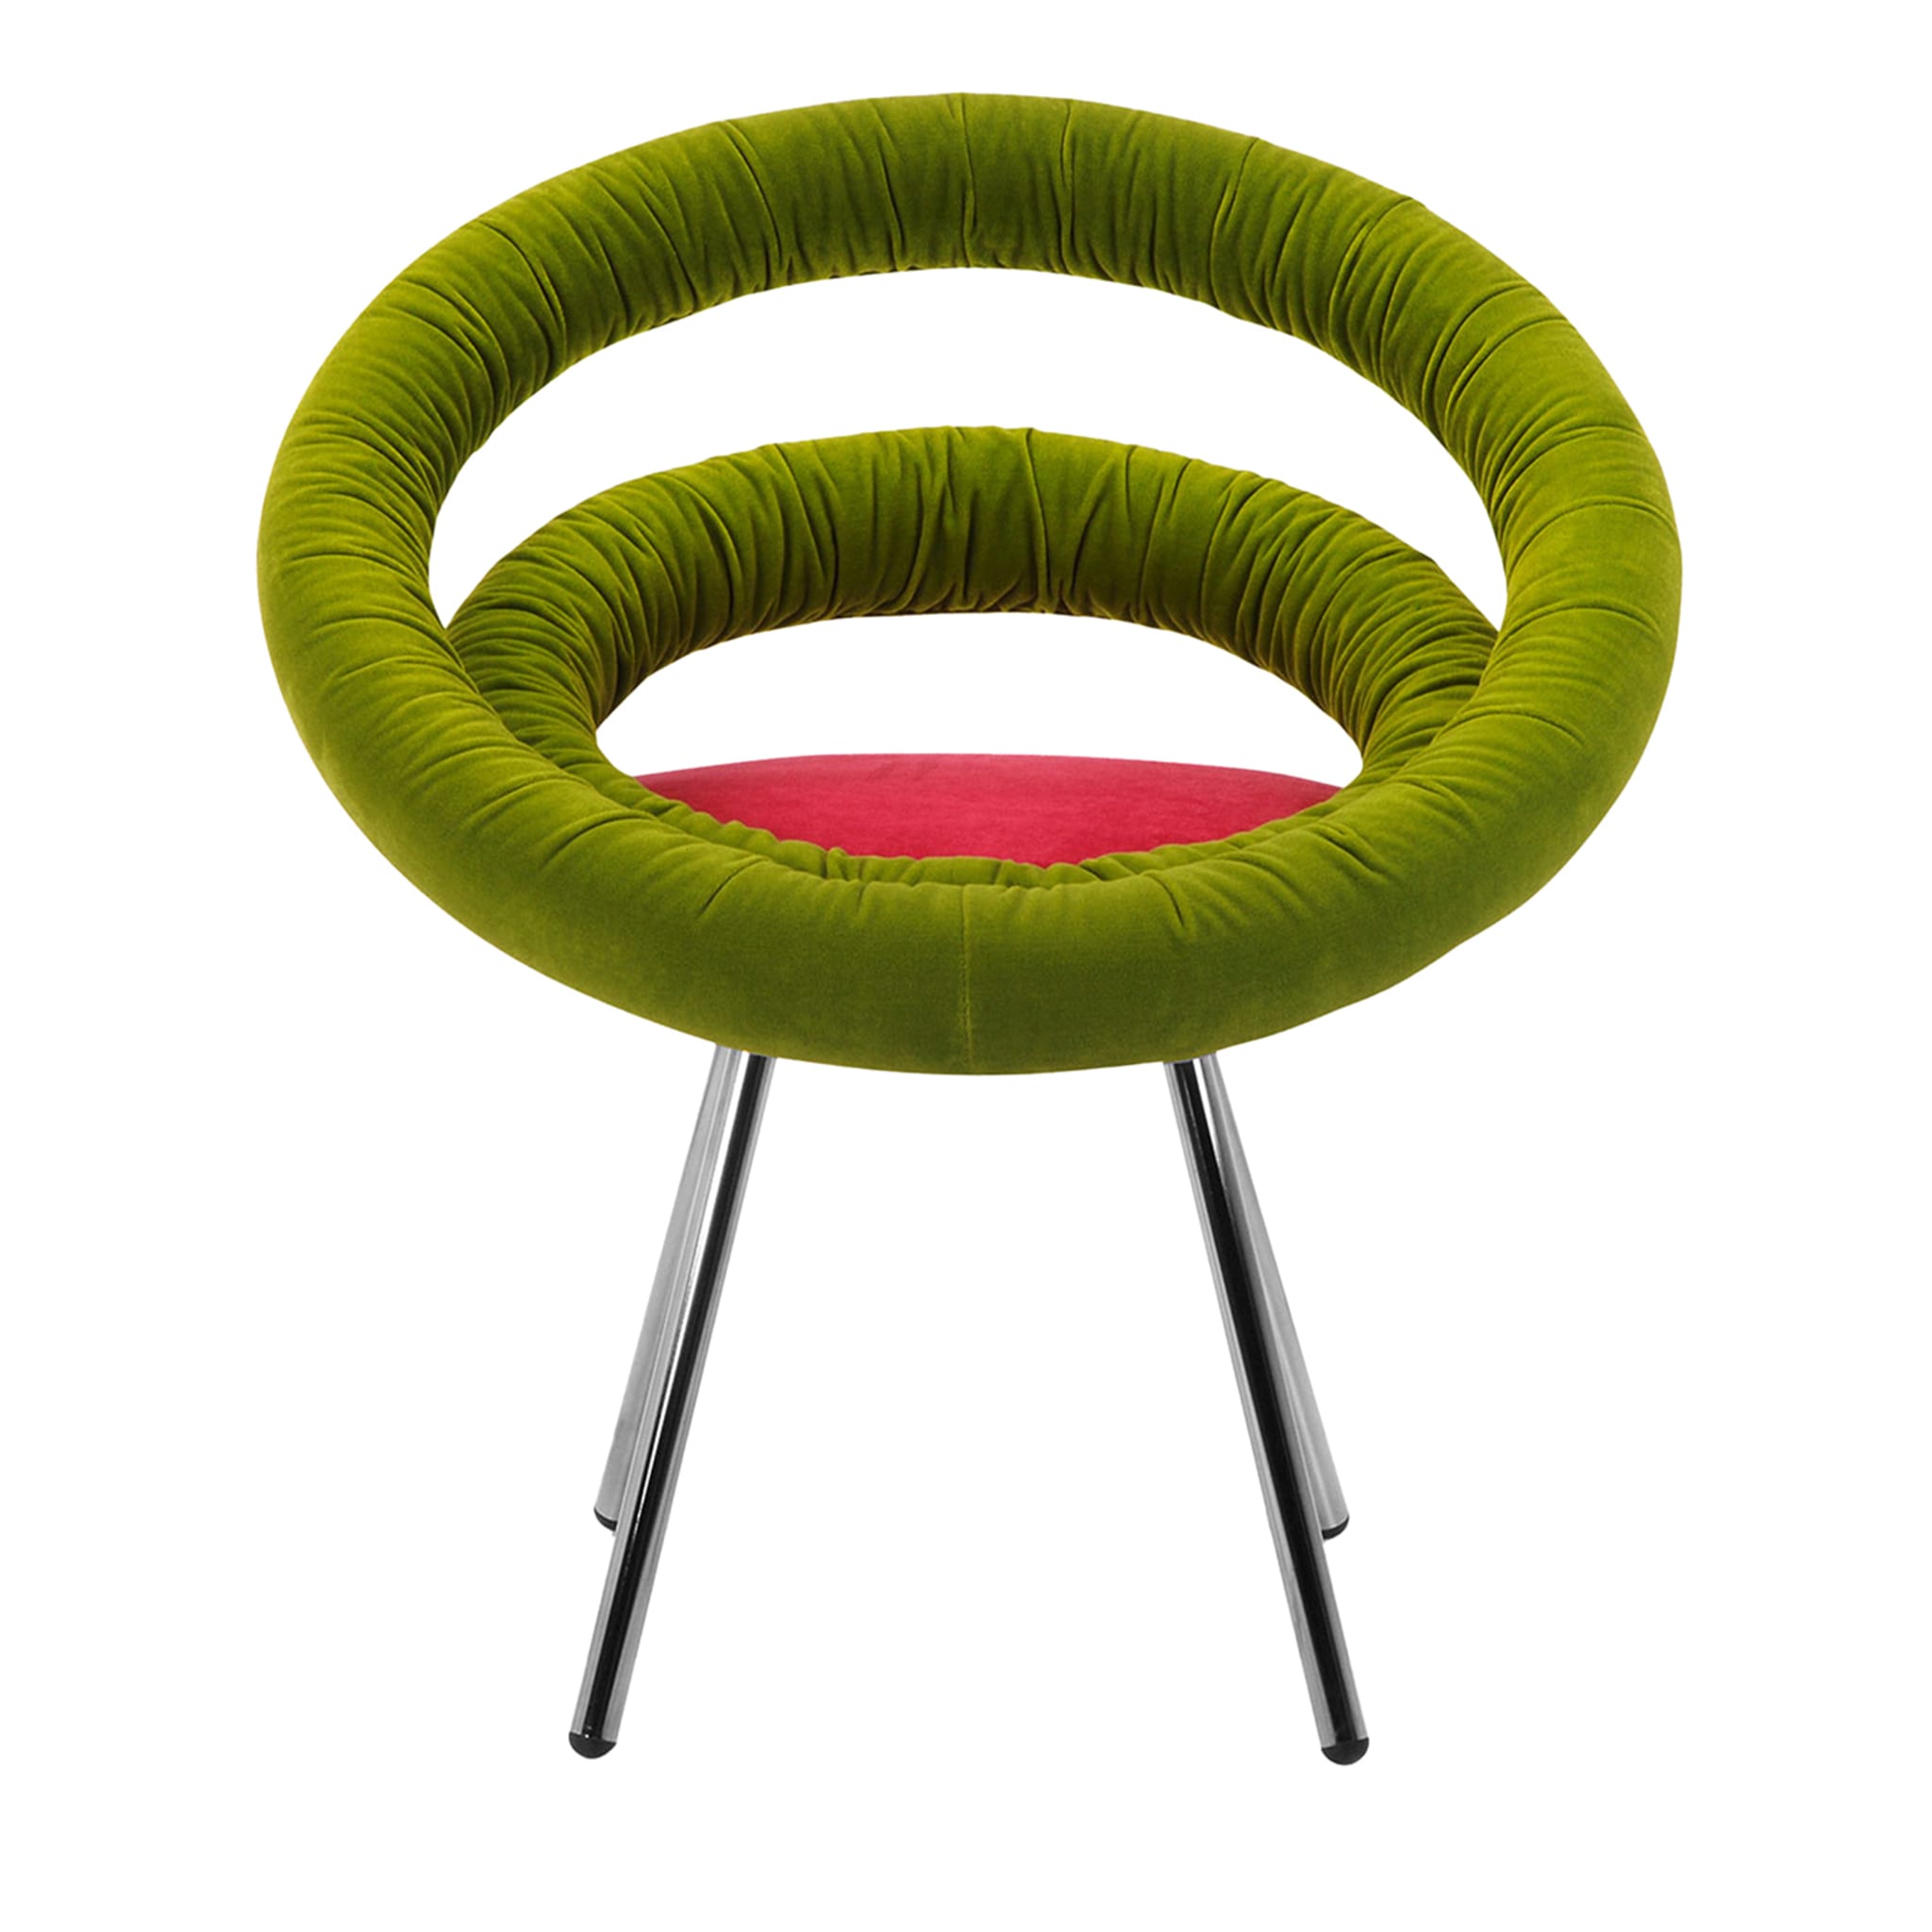 Circle Green & Red Armchair by Roberto Giacomucci & Nicola Cerasa - Main view